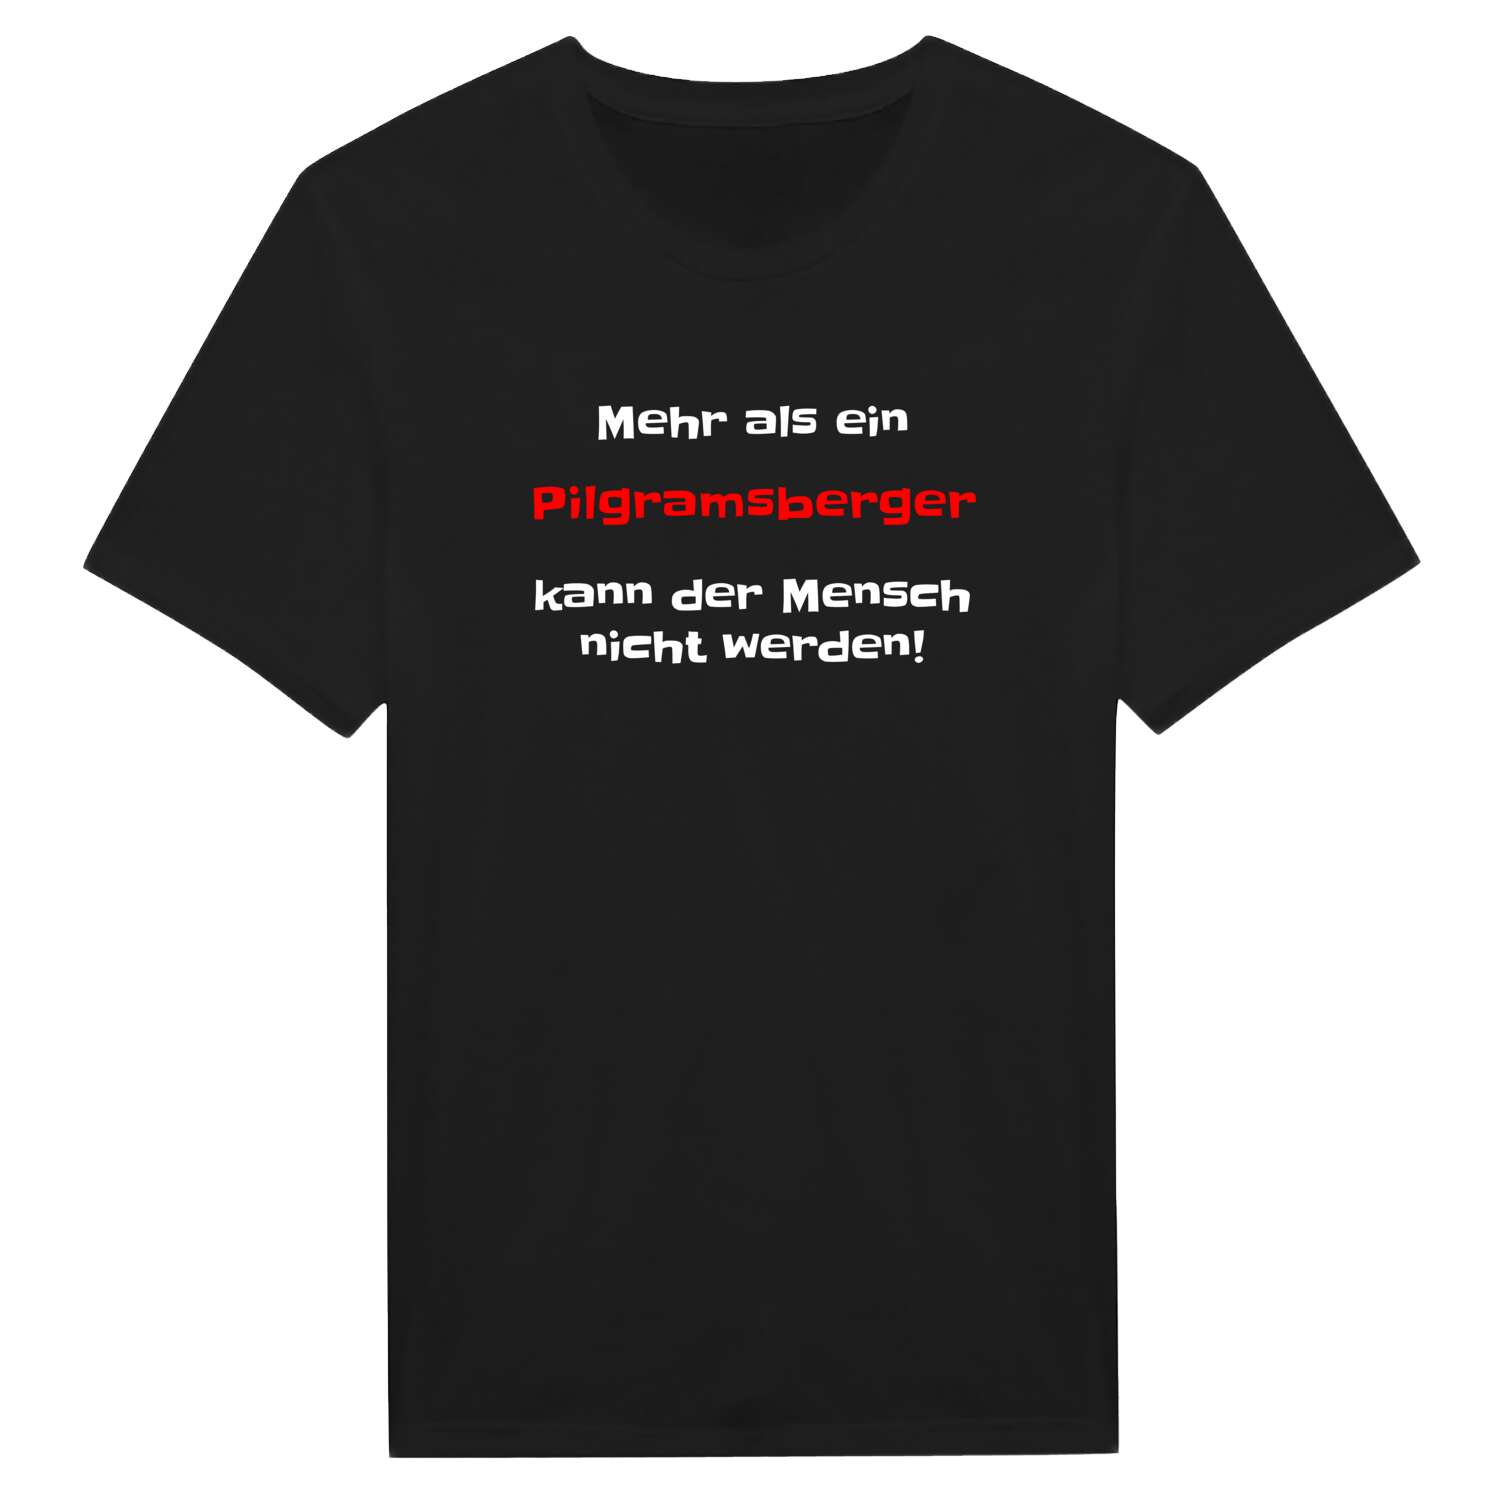 Pilgramsberg T-Shirt »Mehr als ein«